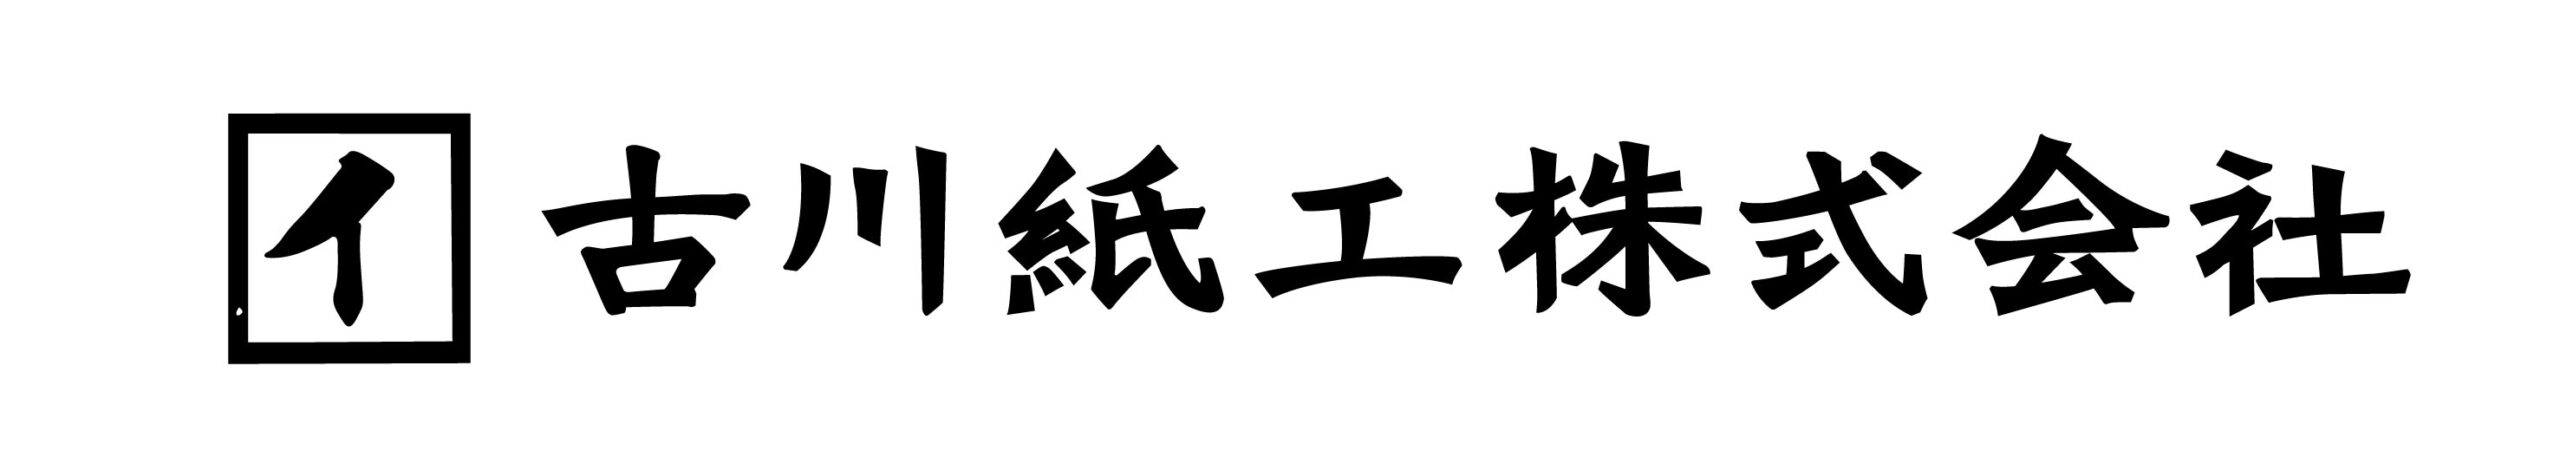 古川紙工株式会社ロゴ